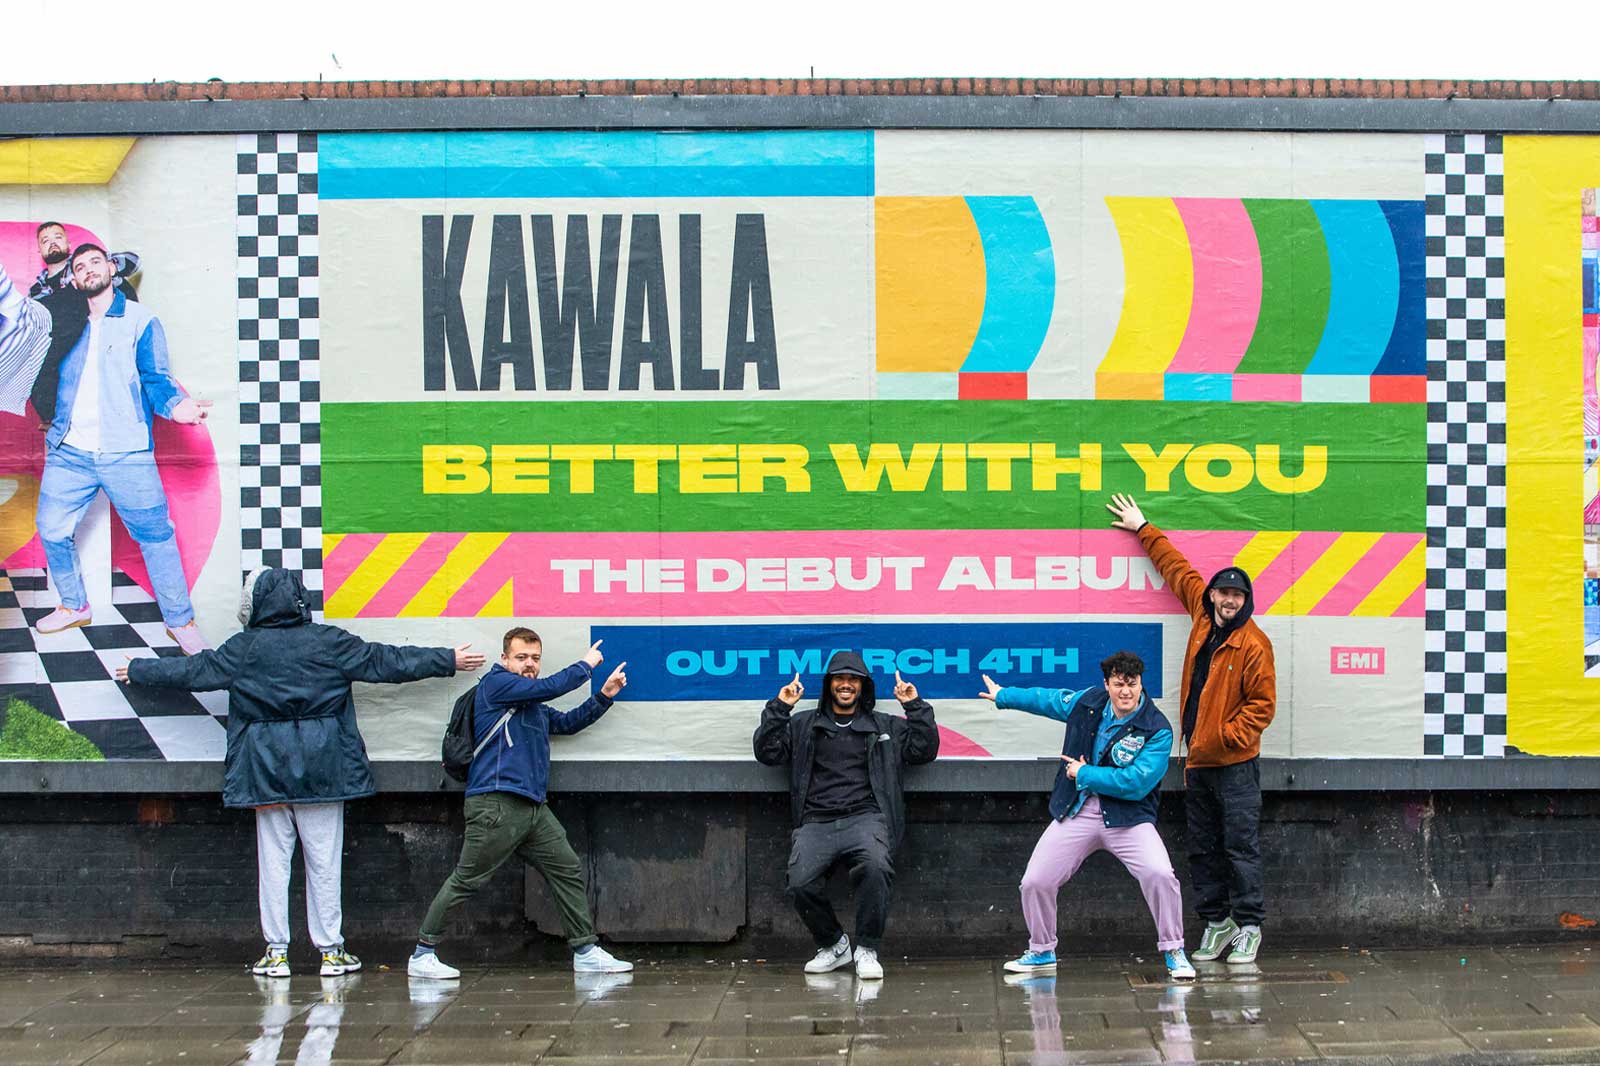 KAWALA: Better With You